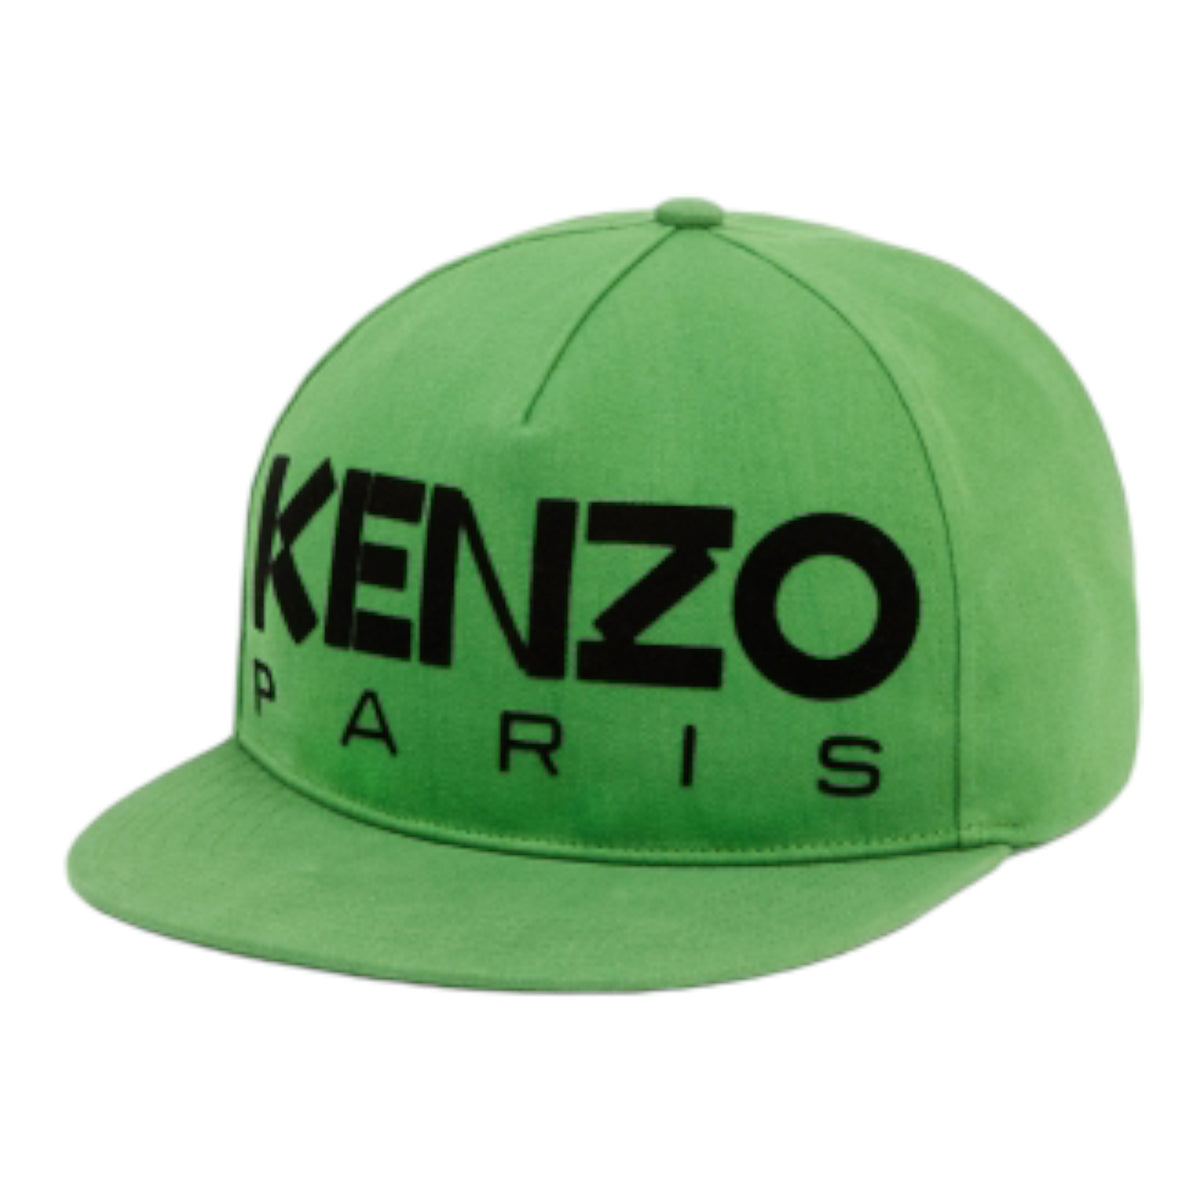 Kenzo Paris Square Oversize Cap